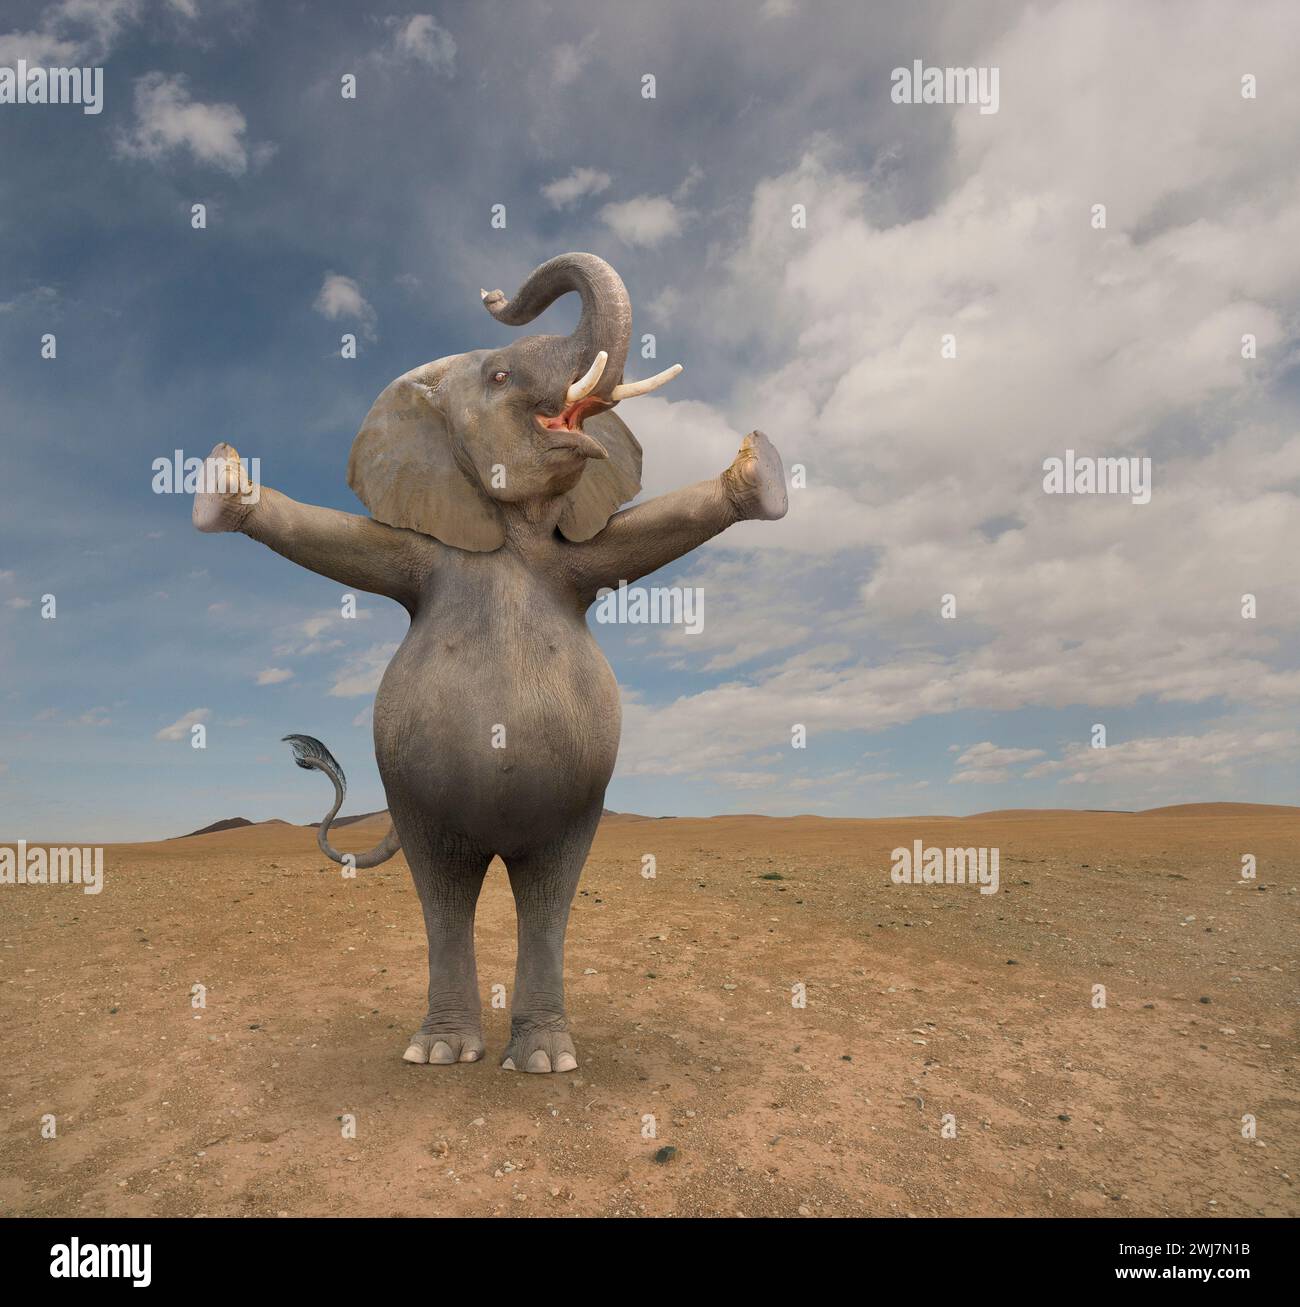 Un éléphant anthropomorphe se tient debout sur ses pattes arrière et lui tend les bras pendant qu'il fait une annonce. Banque D'Images